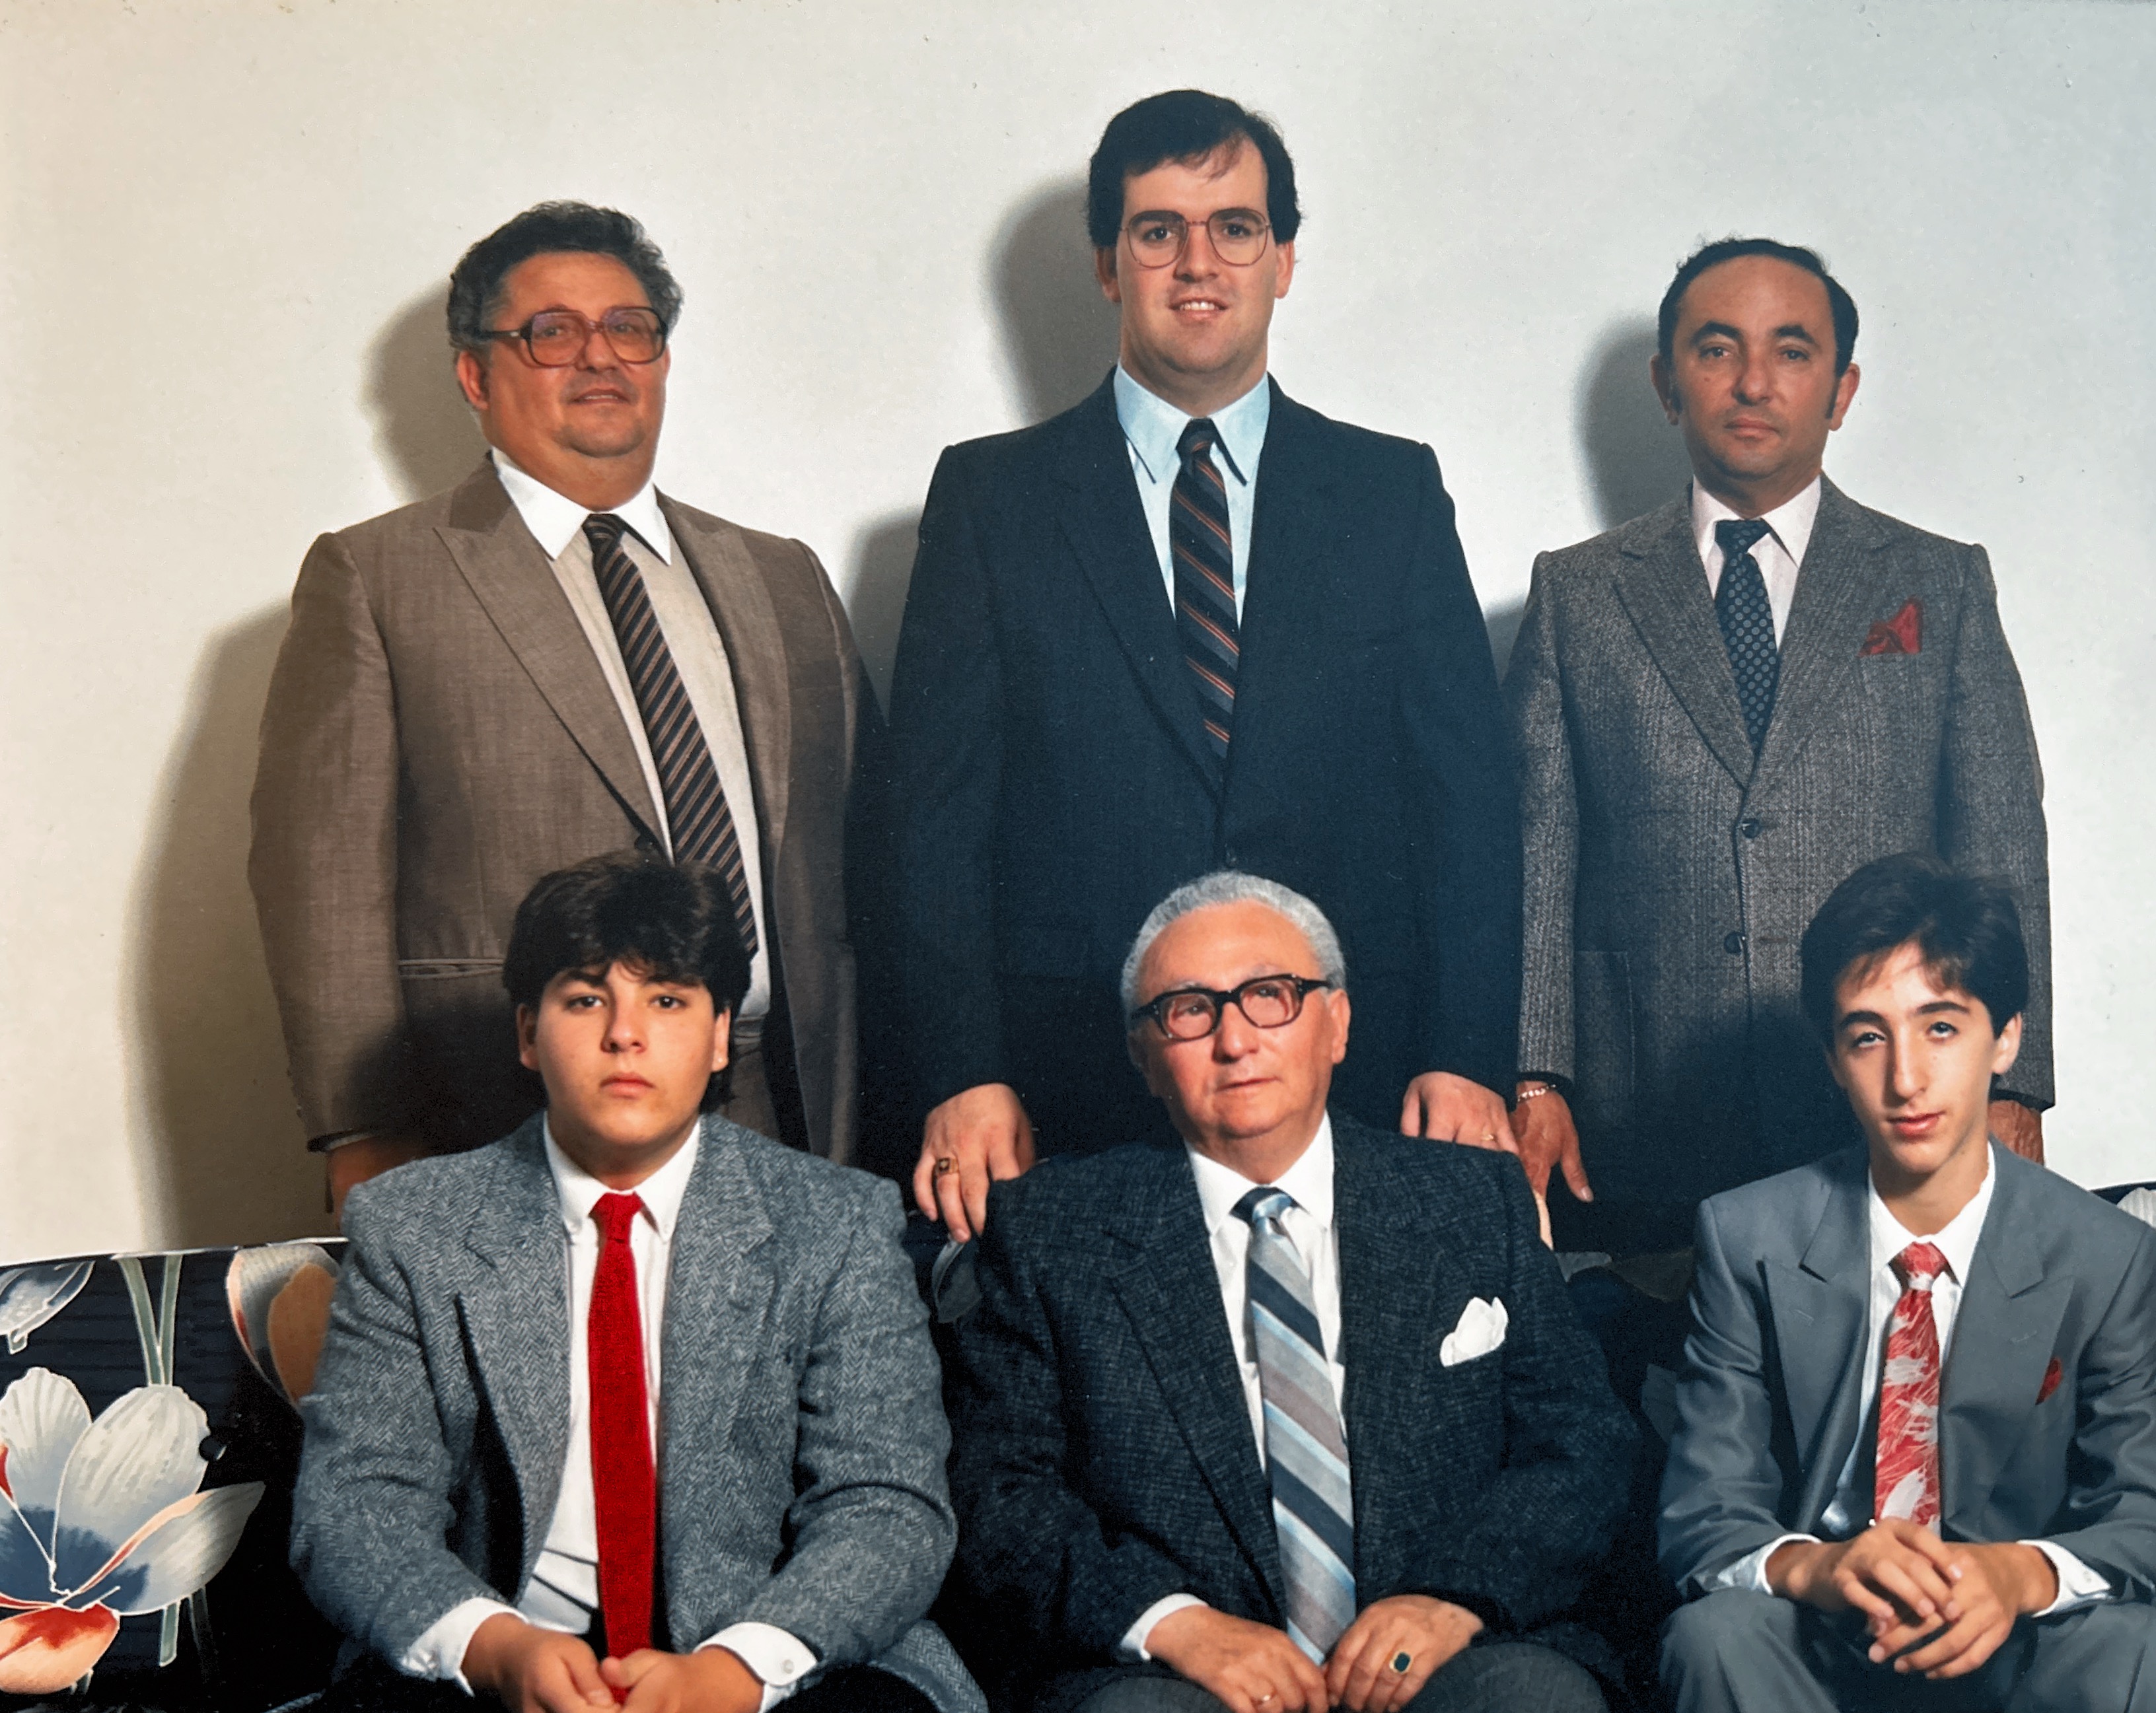 The Weissberger men, circa 1987